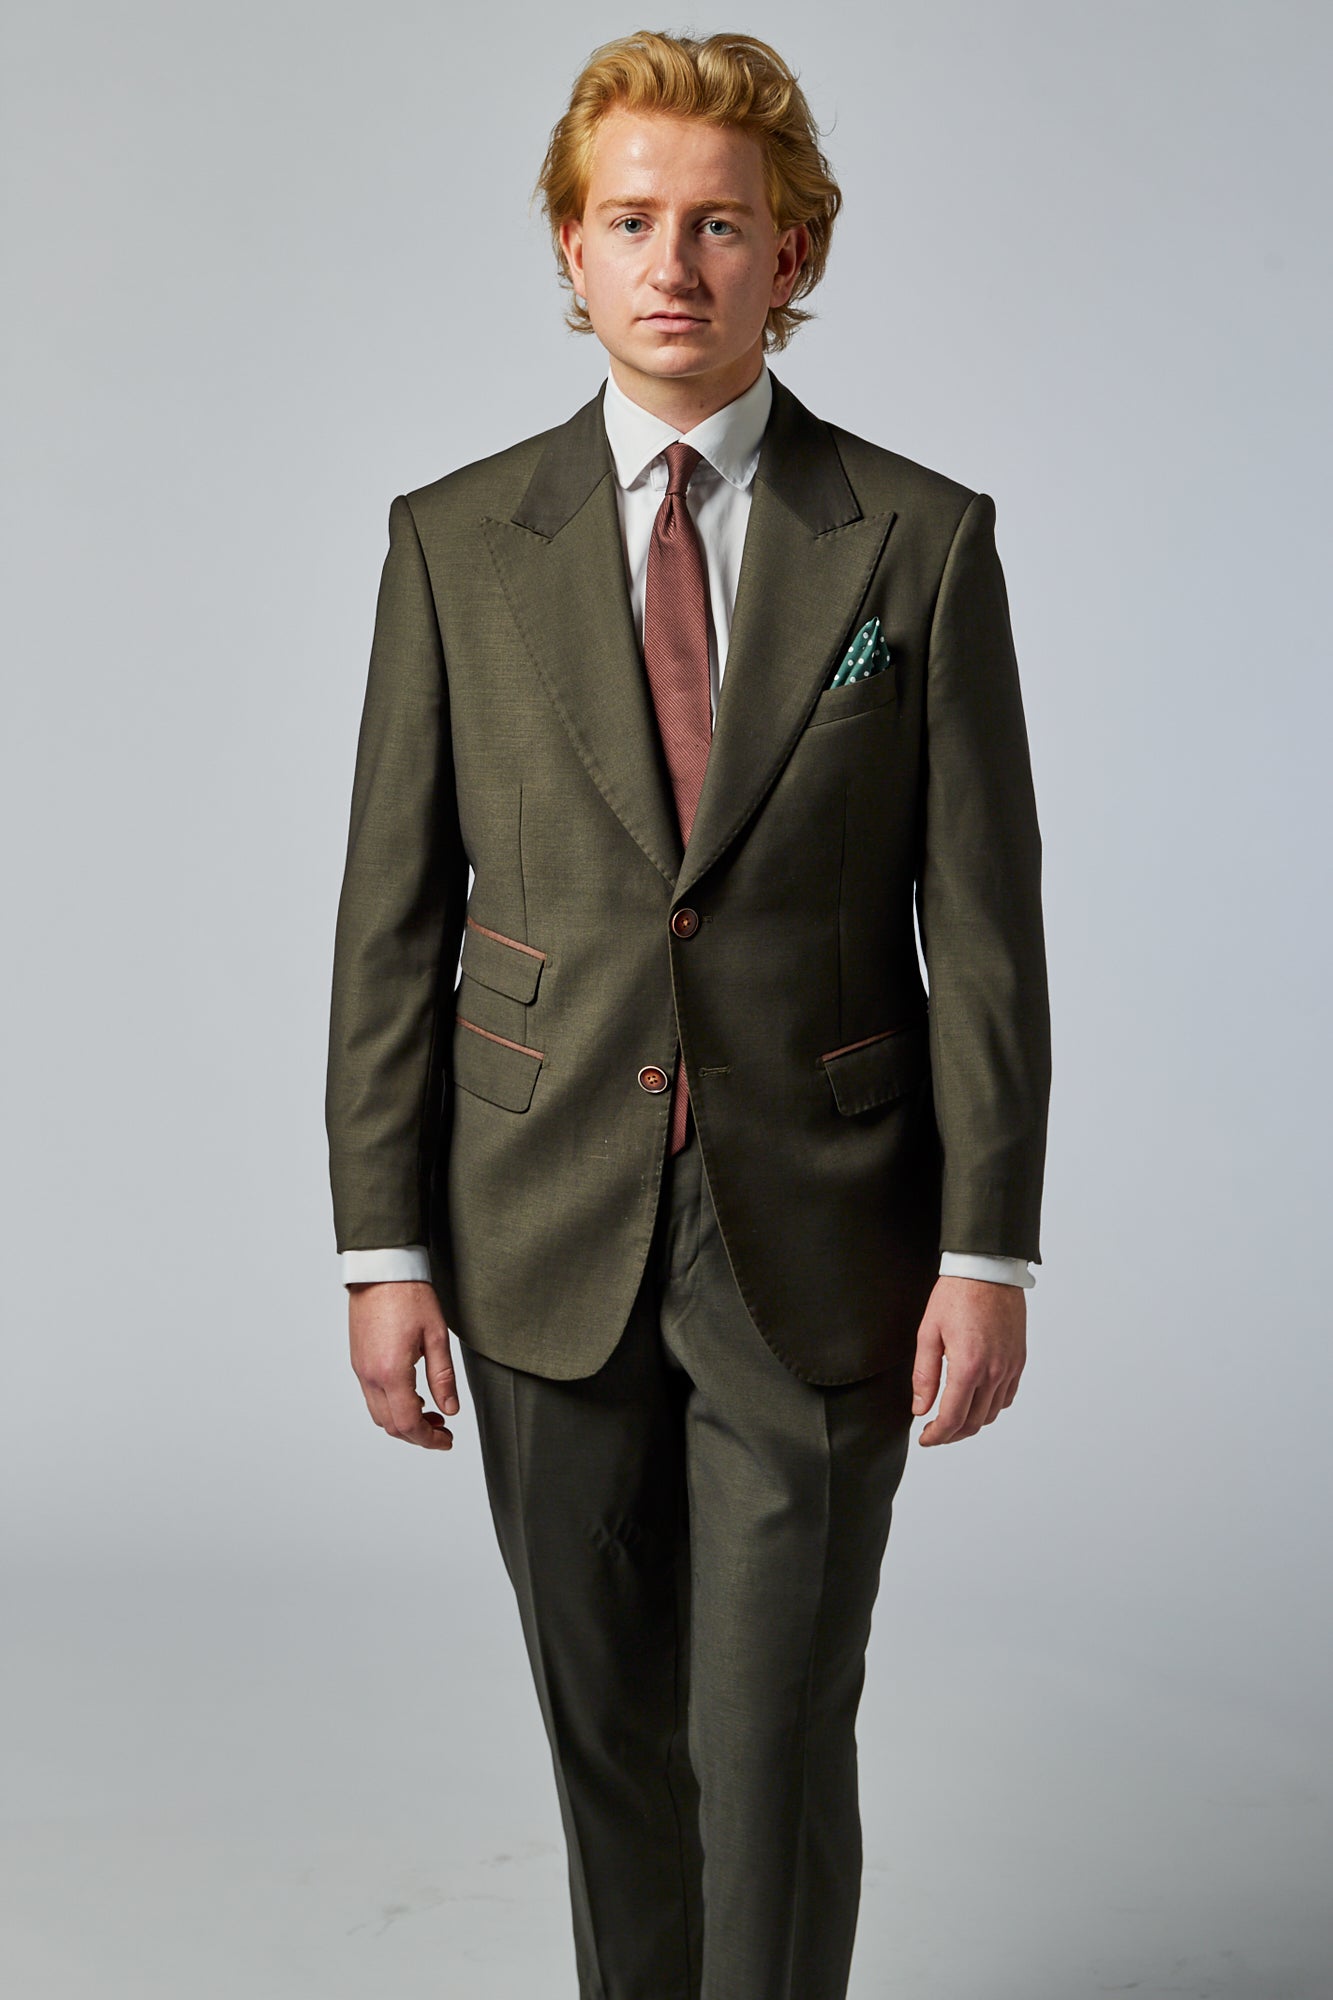 jordfarvet grønt jakkesæt med brunt slips